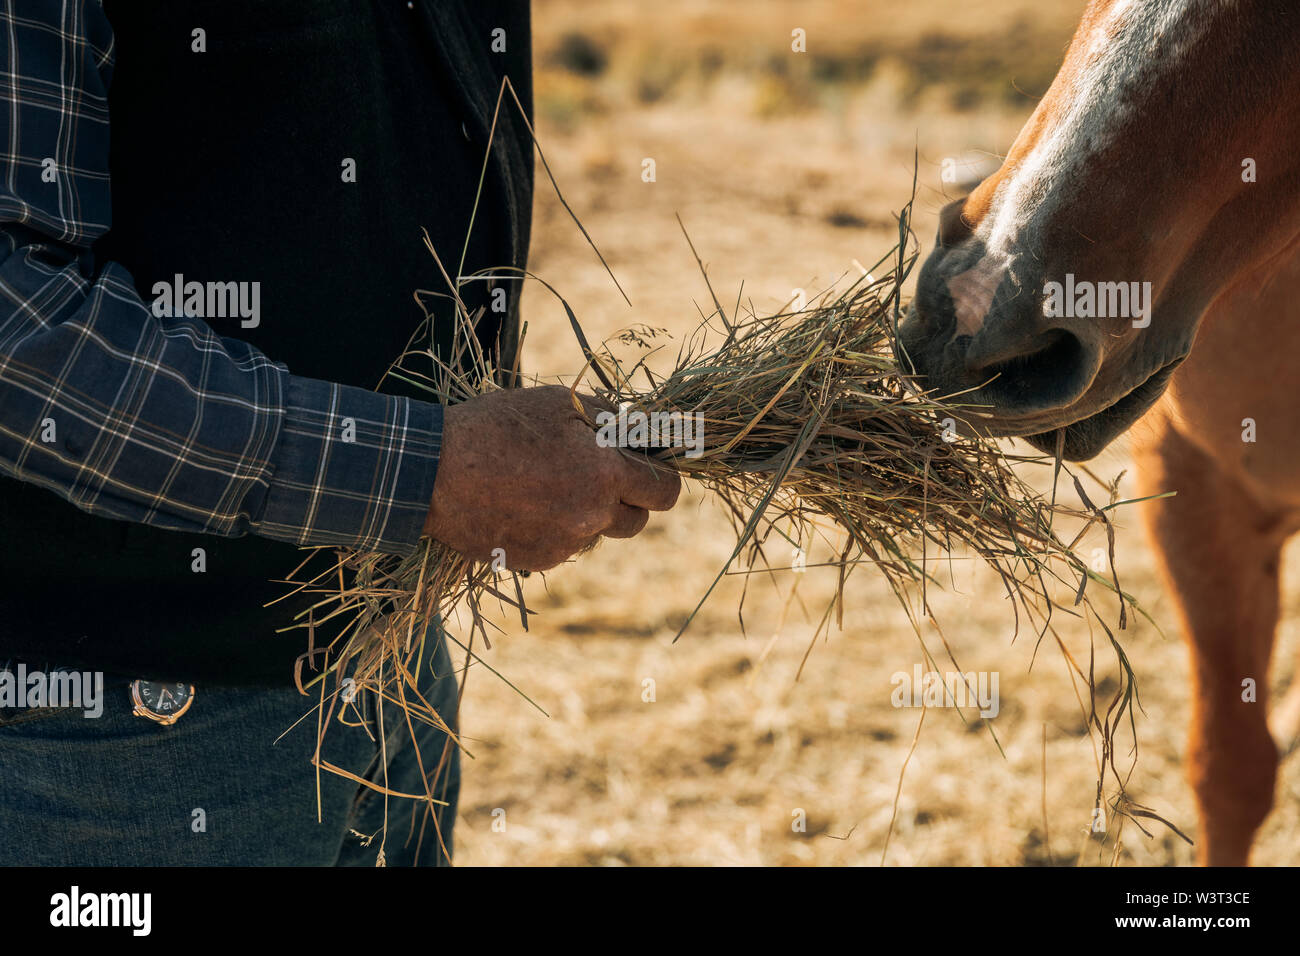 Foin de la paille pour l'alimentation d'un ranch horse Banque D'Images